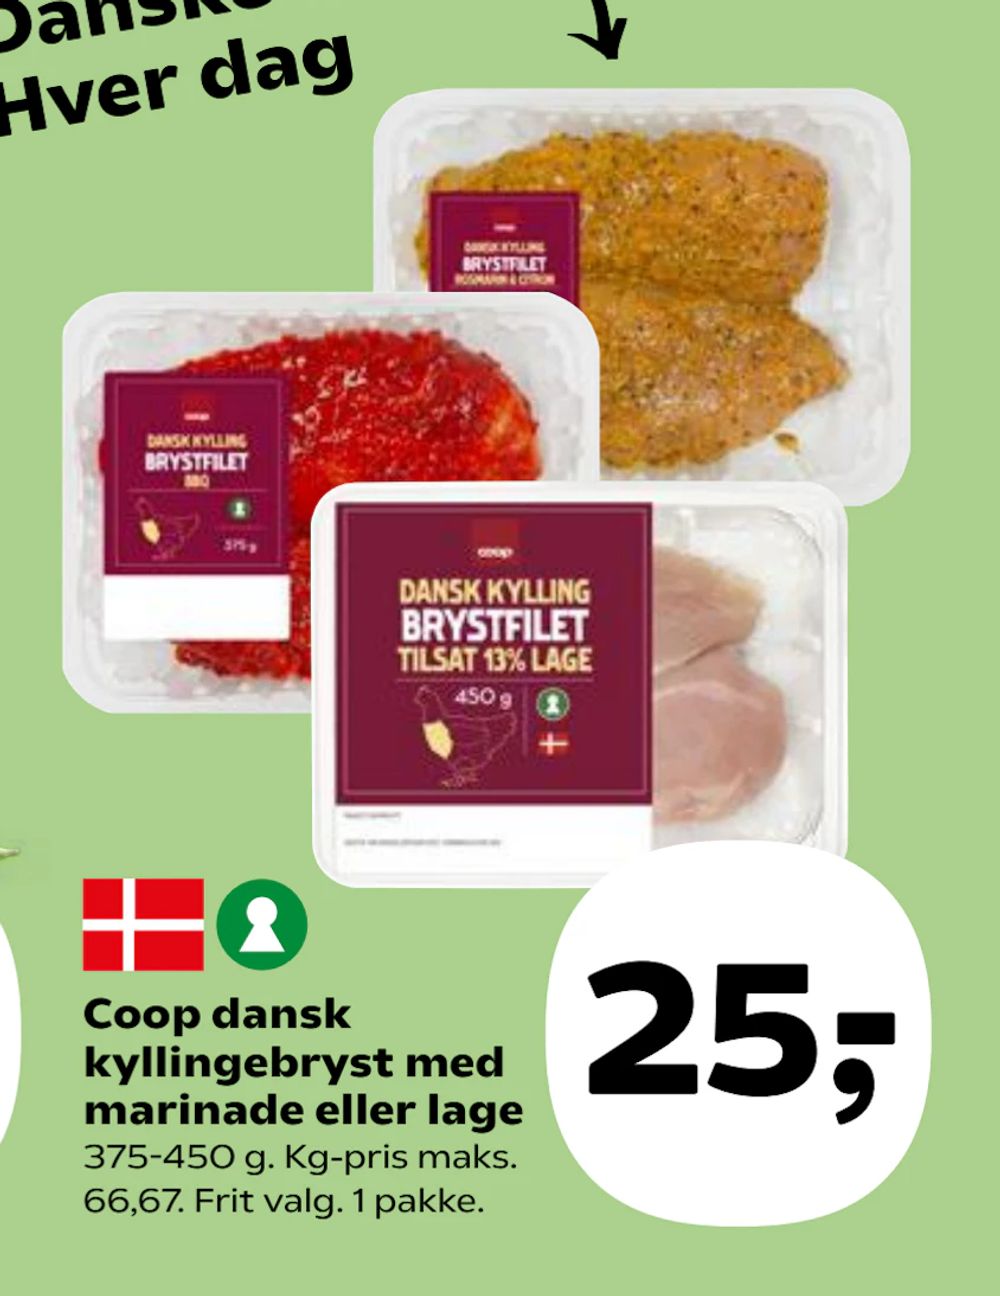 Tilbud på Coop dansk kyllingebryst med marinade eller lage fra Kvickly til 25 kr.